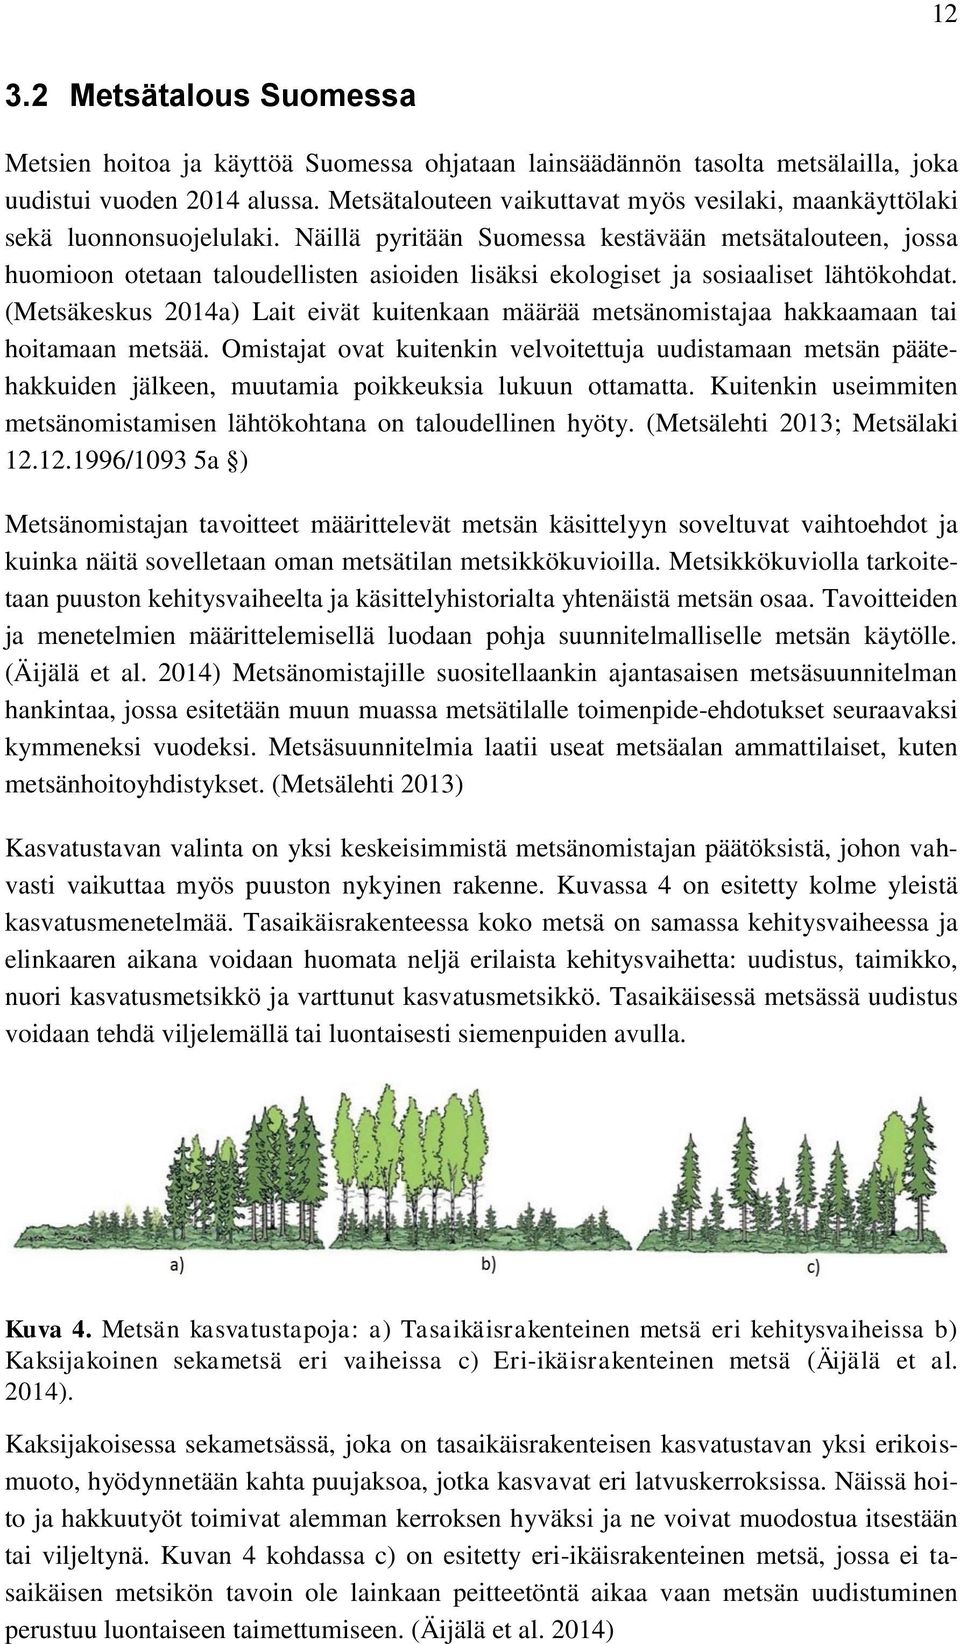 Näillä pyritään Suomessa kestävään metsätalouteen, jossa huomioon otetaan taloudellisten asioiden lisäksi ekologiset ja sosiaaliset lähtökohdat.